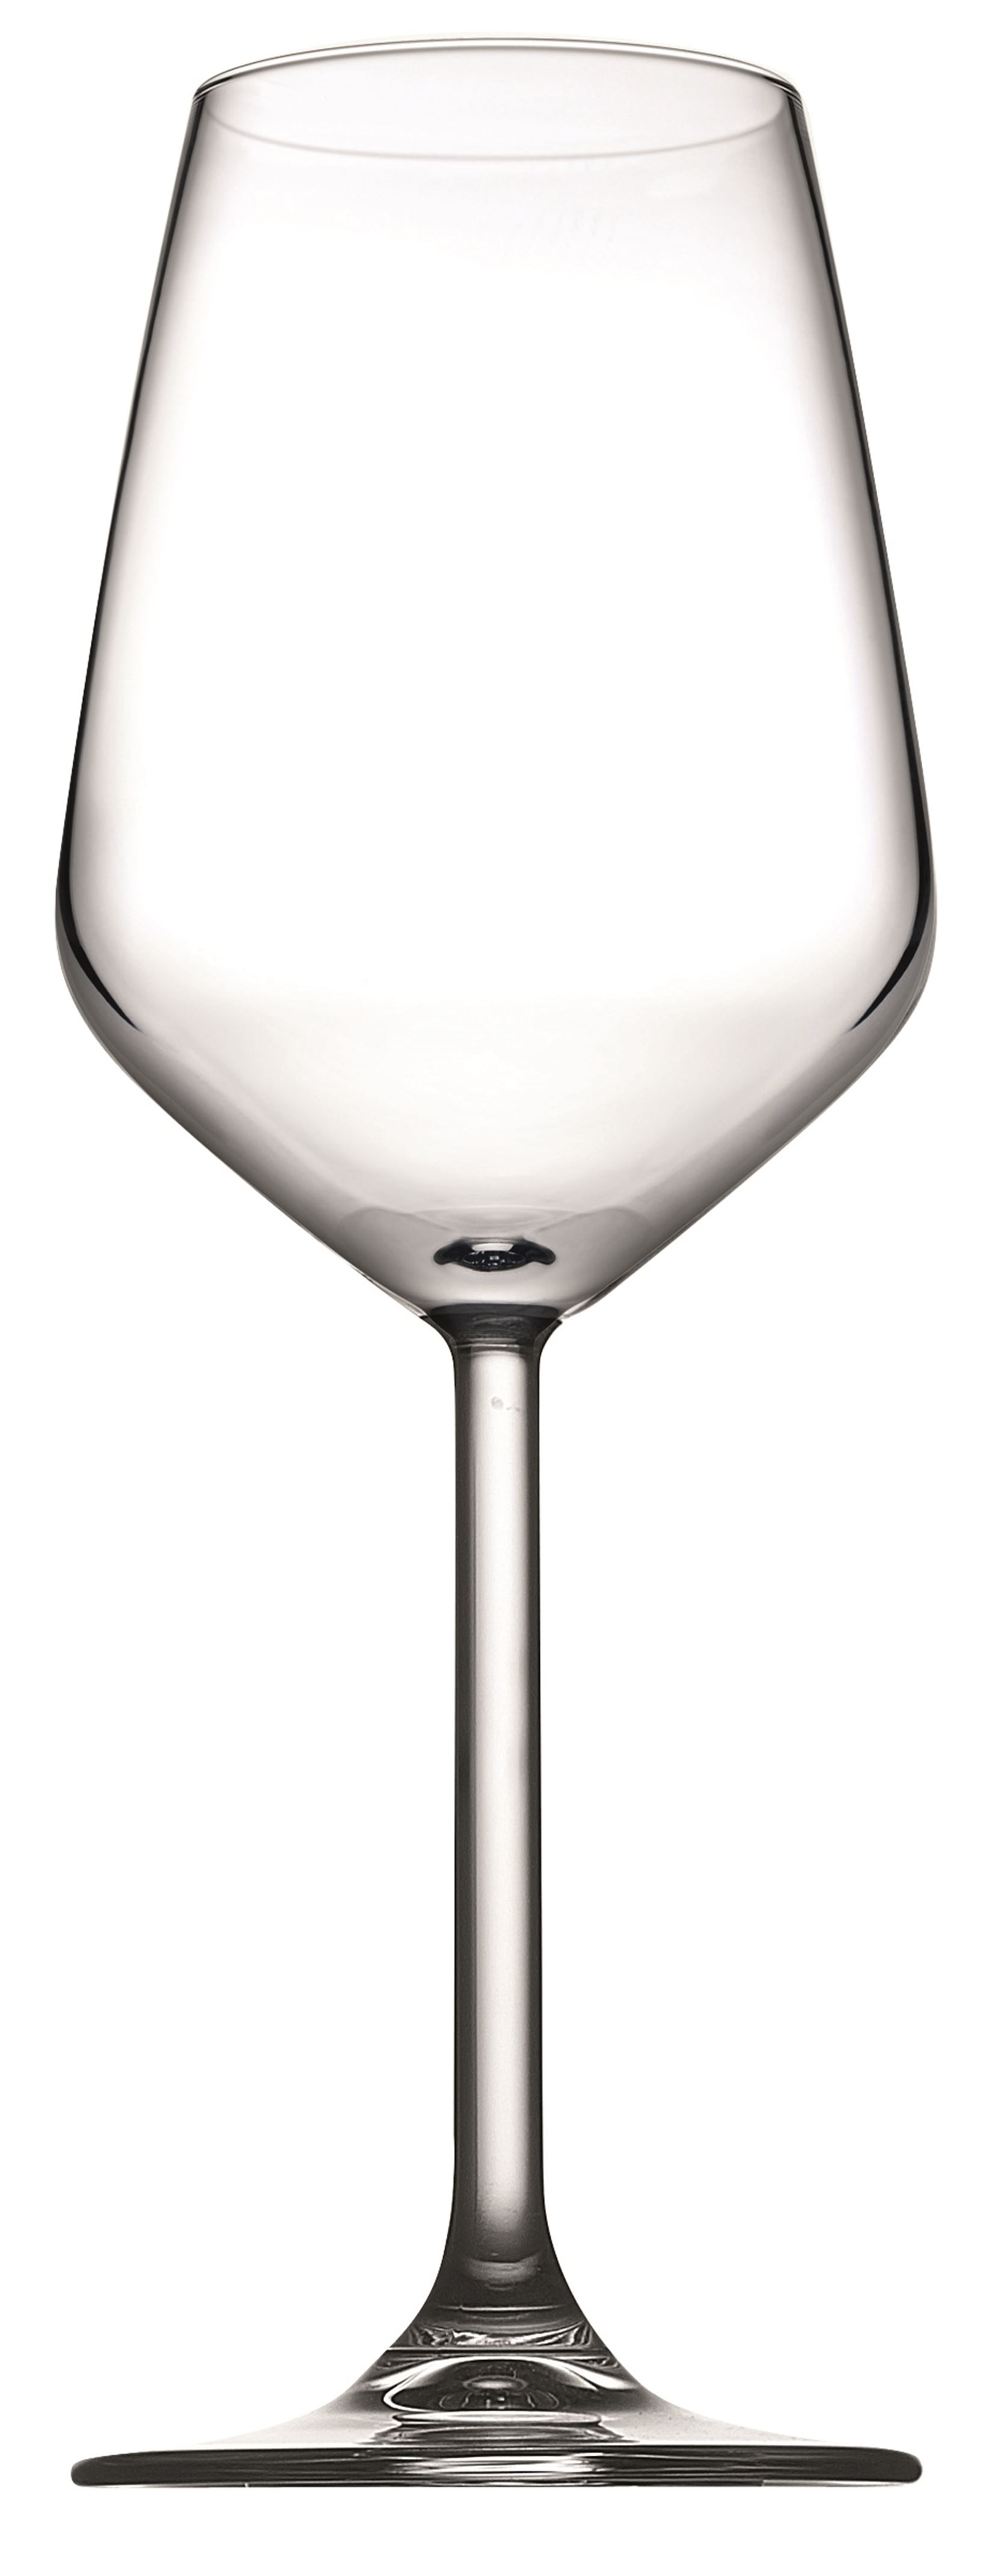 Weinglas Allegra, 0,3 ltr., Glas